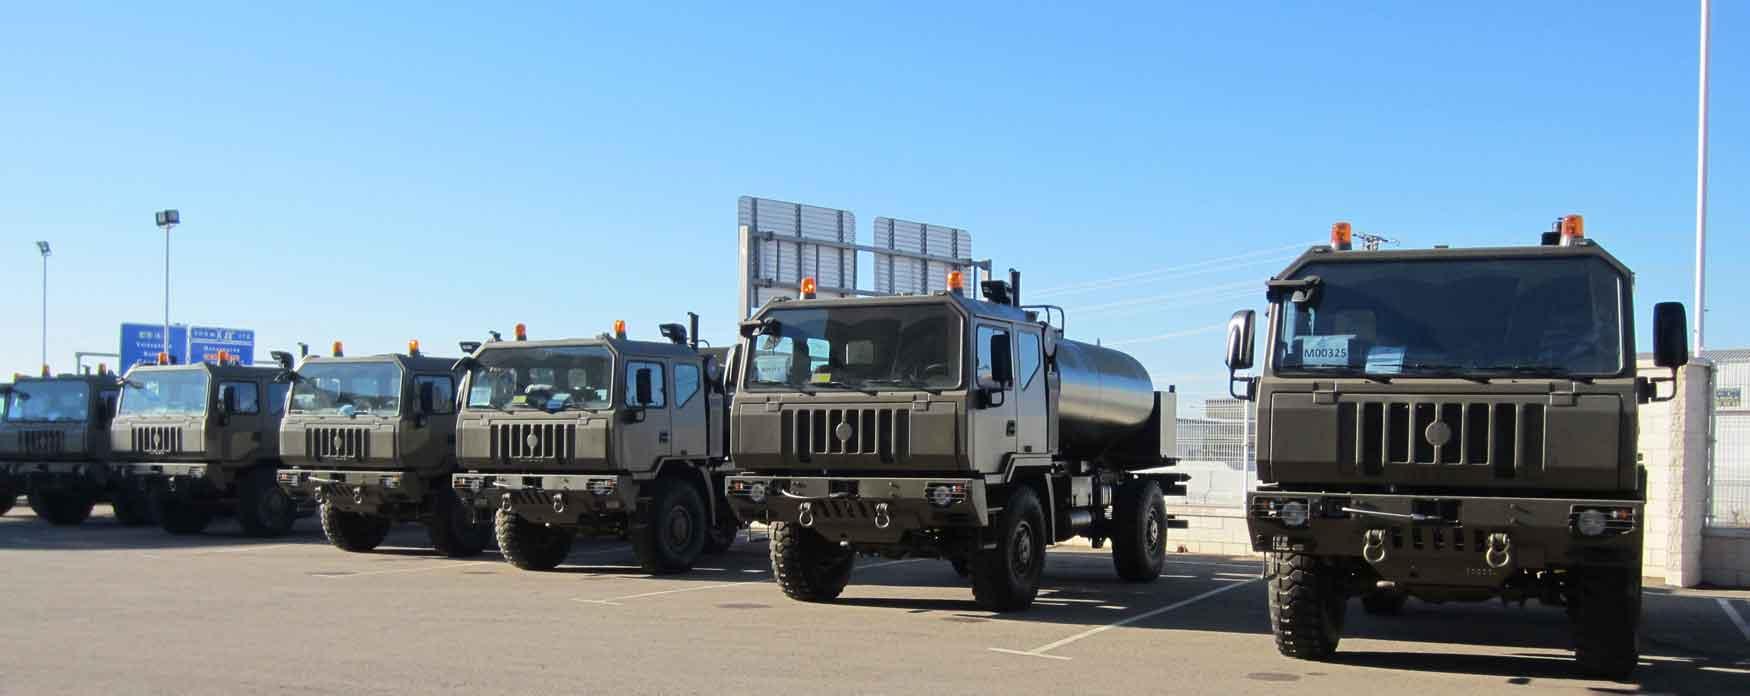 El Ministerio de Defensa espaol ya ha recibido 150 unidades de los camiones de alta movilidad suministrados por Iveco Defence Vehicles...